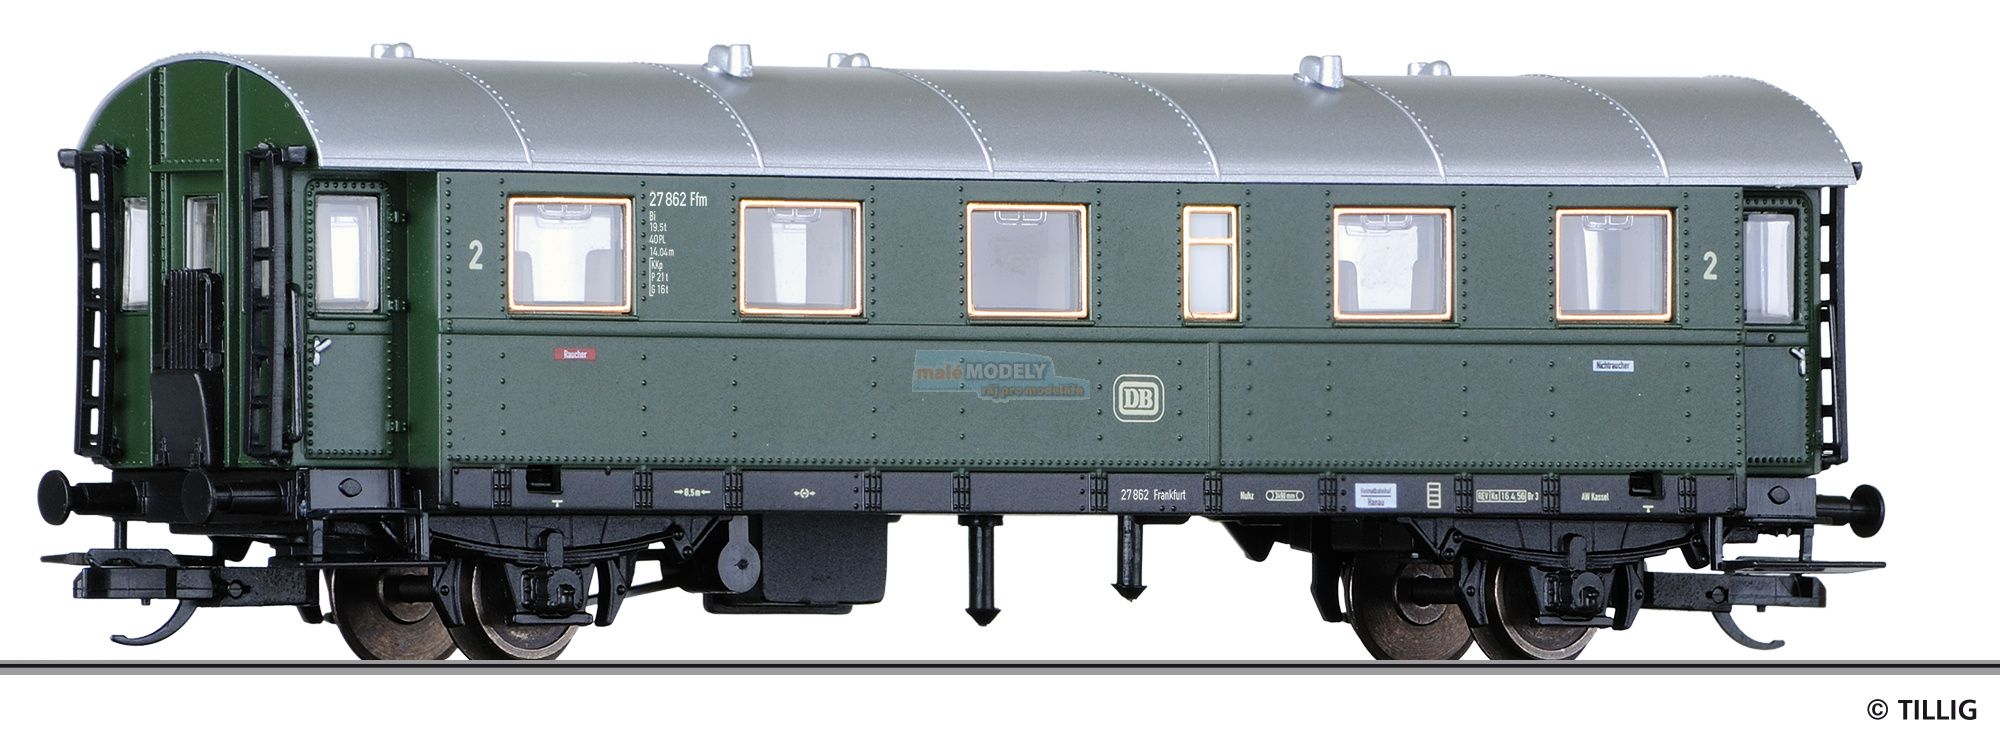 Reisezugwagen 2. Klasse Bi der DB, Ep. III